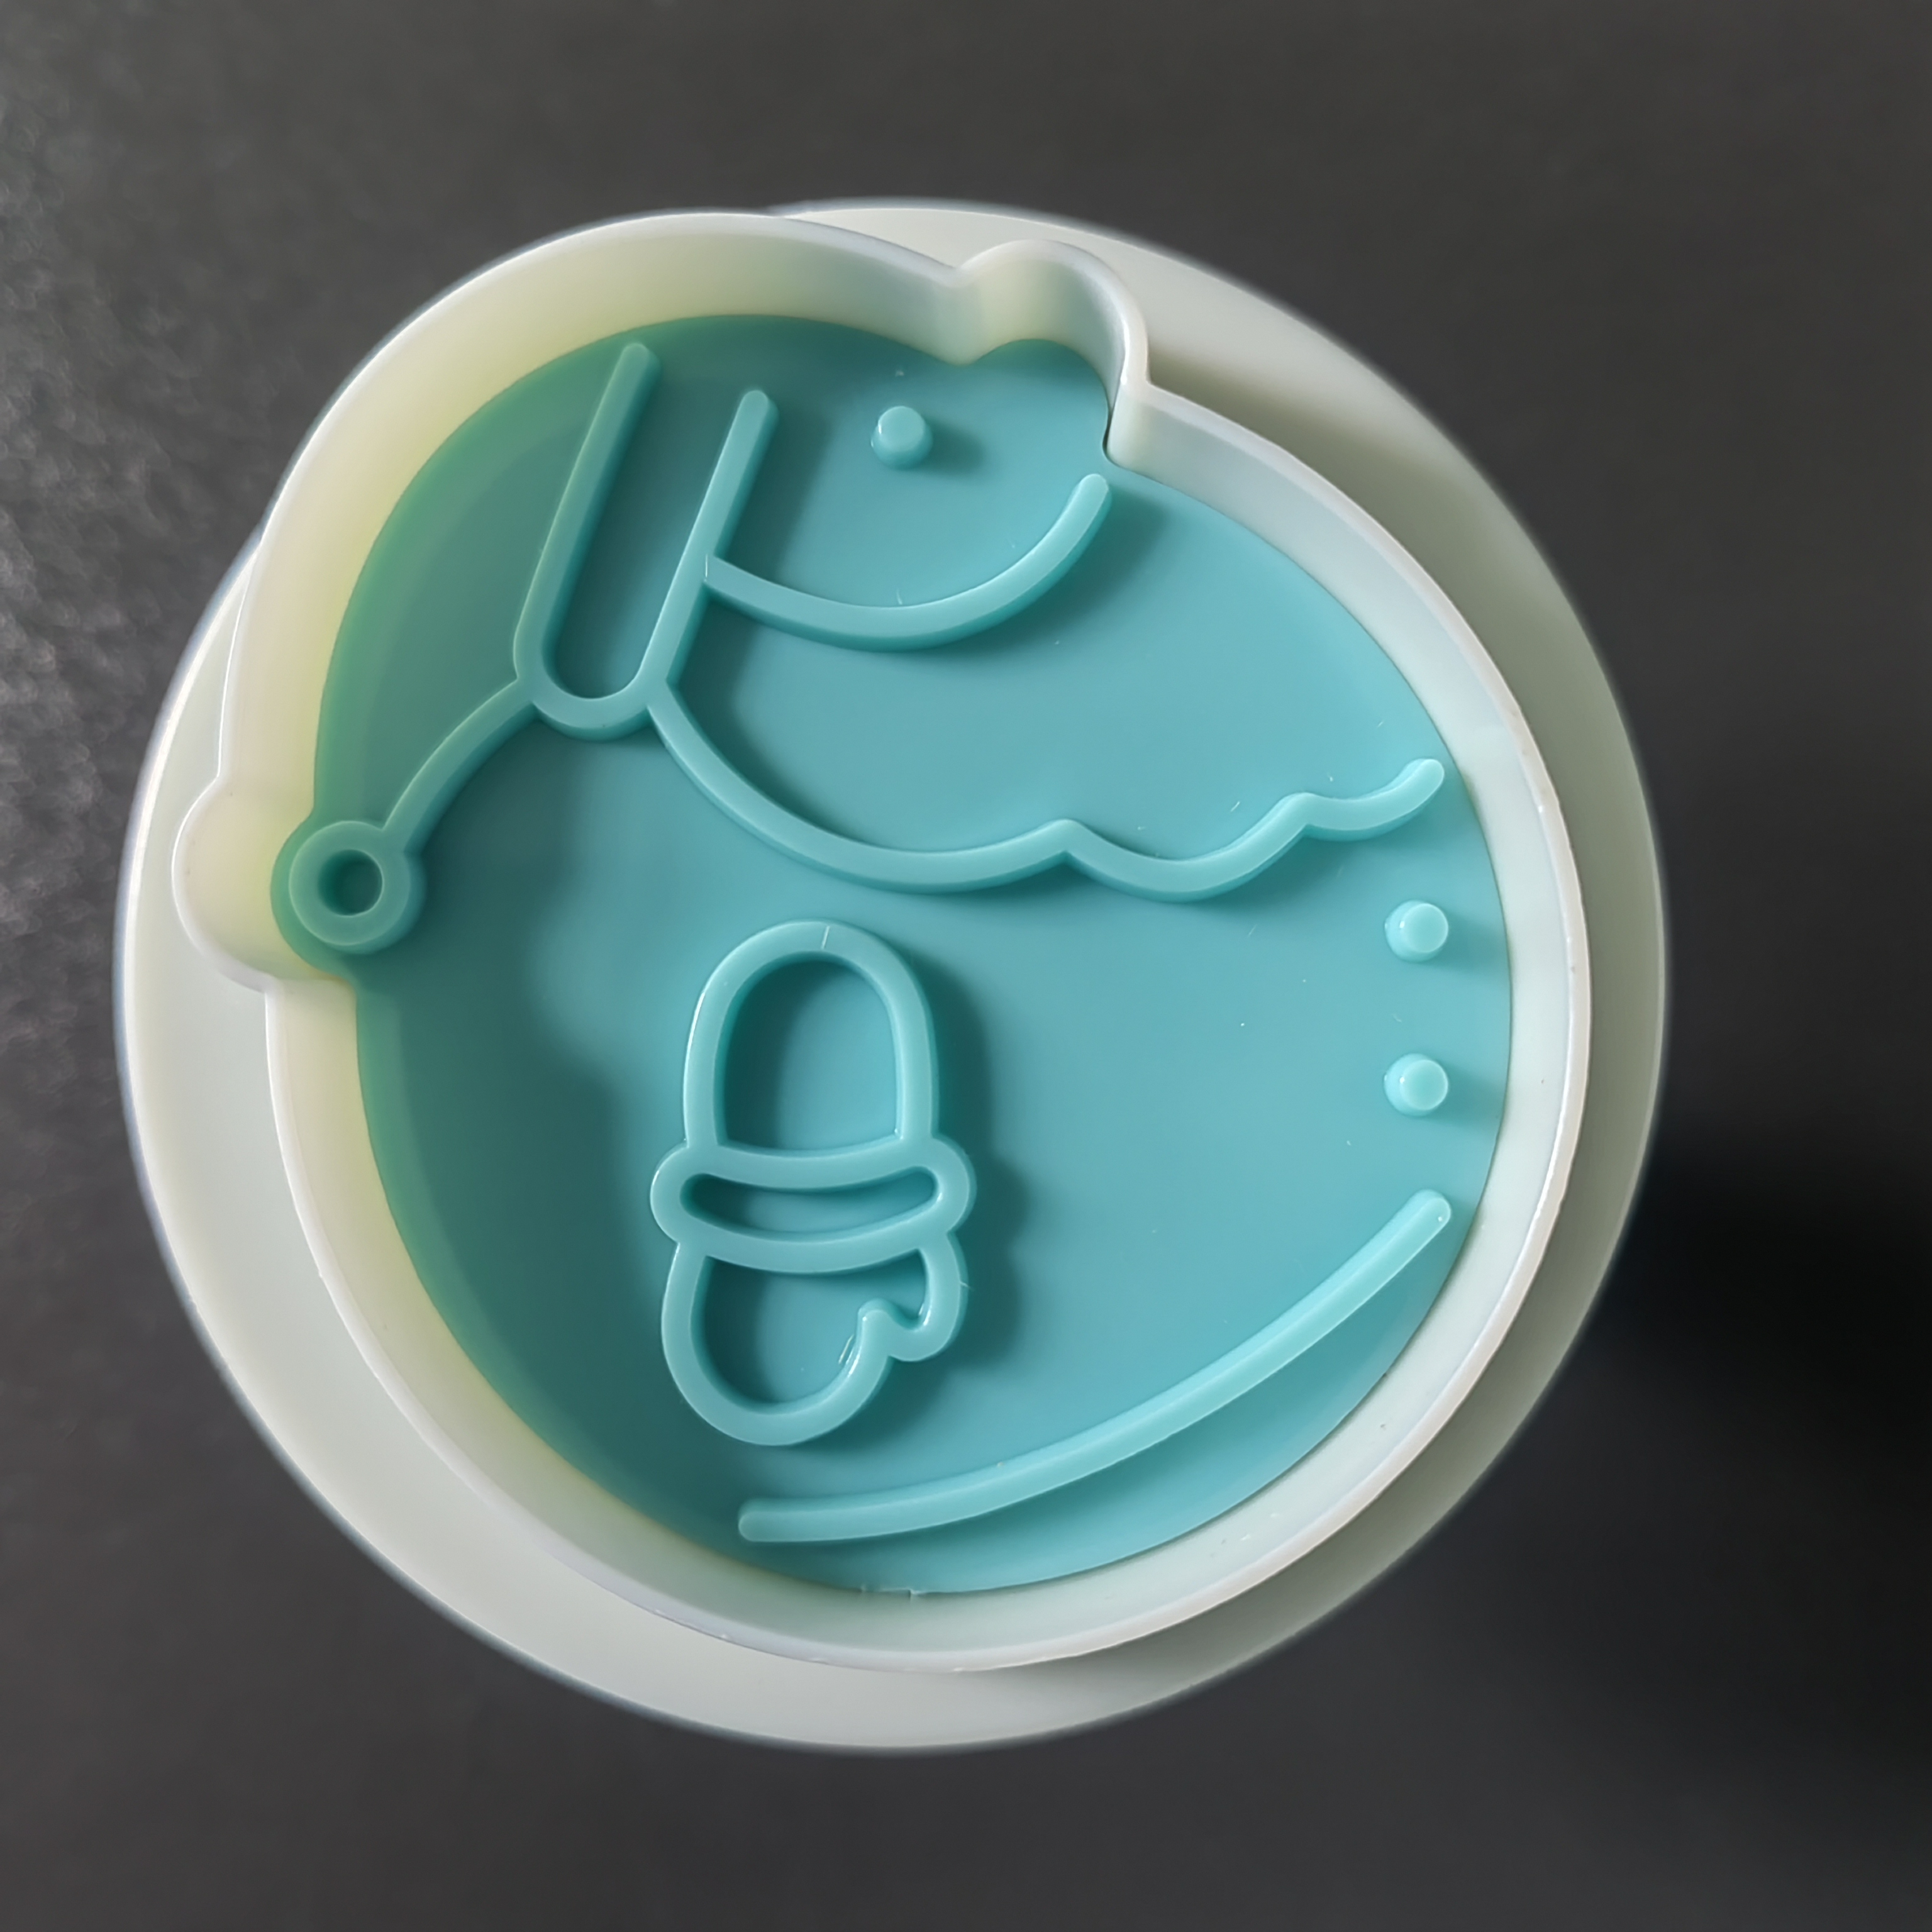 HB0151-8 Plastic 3pcs Snowman Series Cookie Molds set